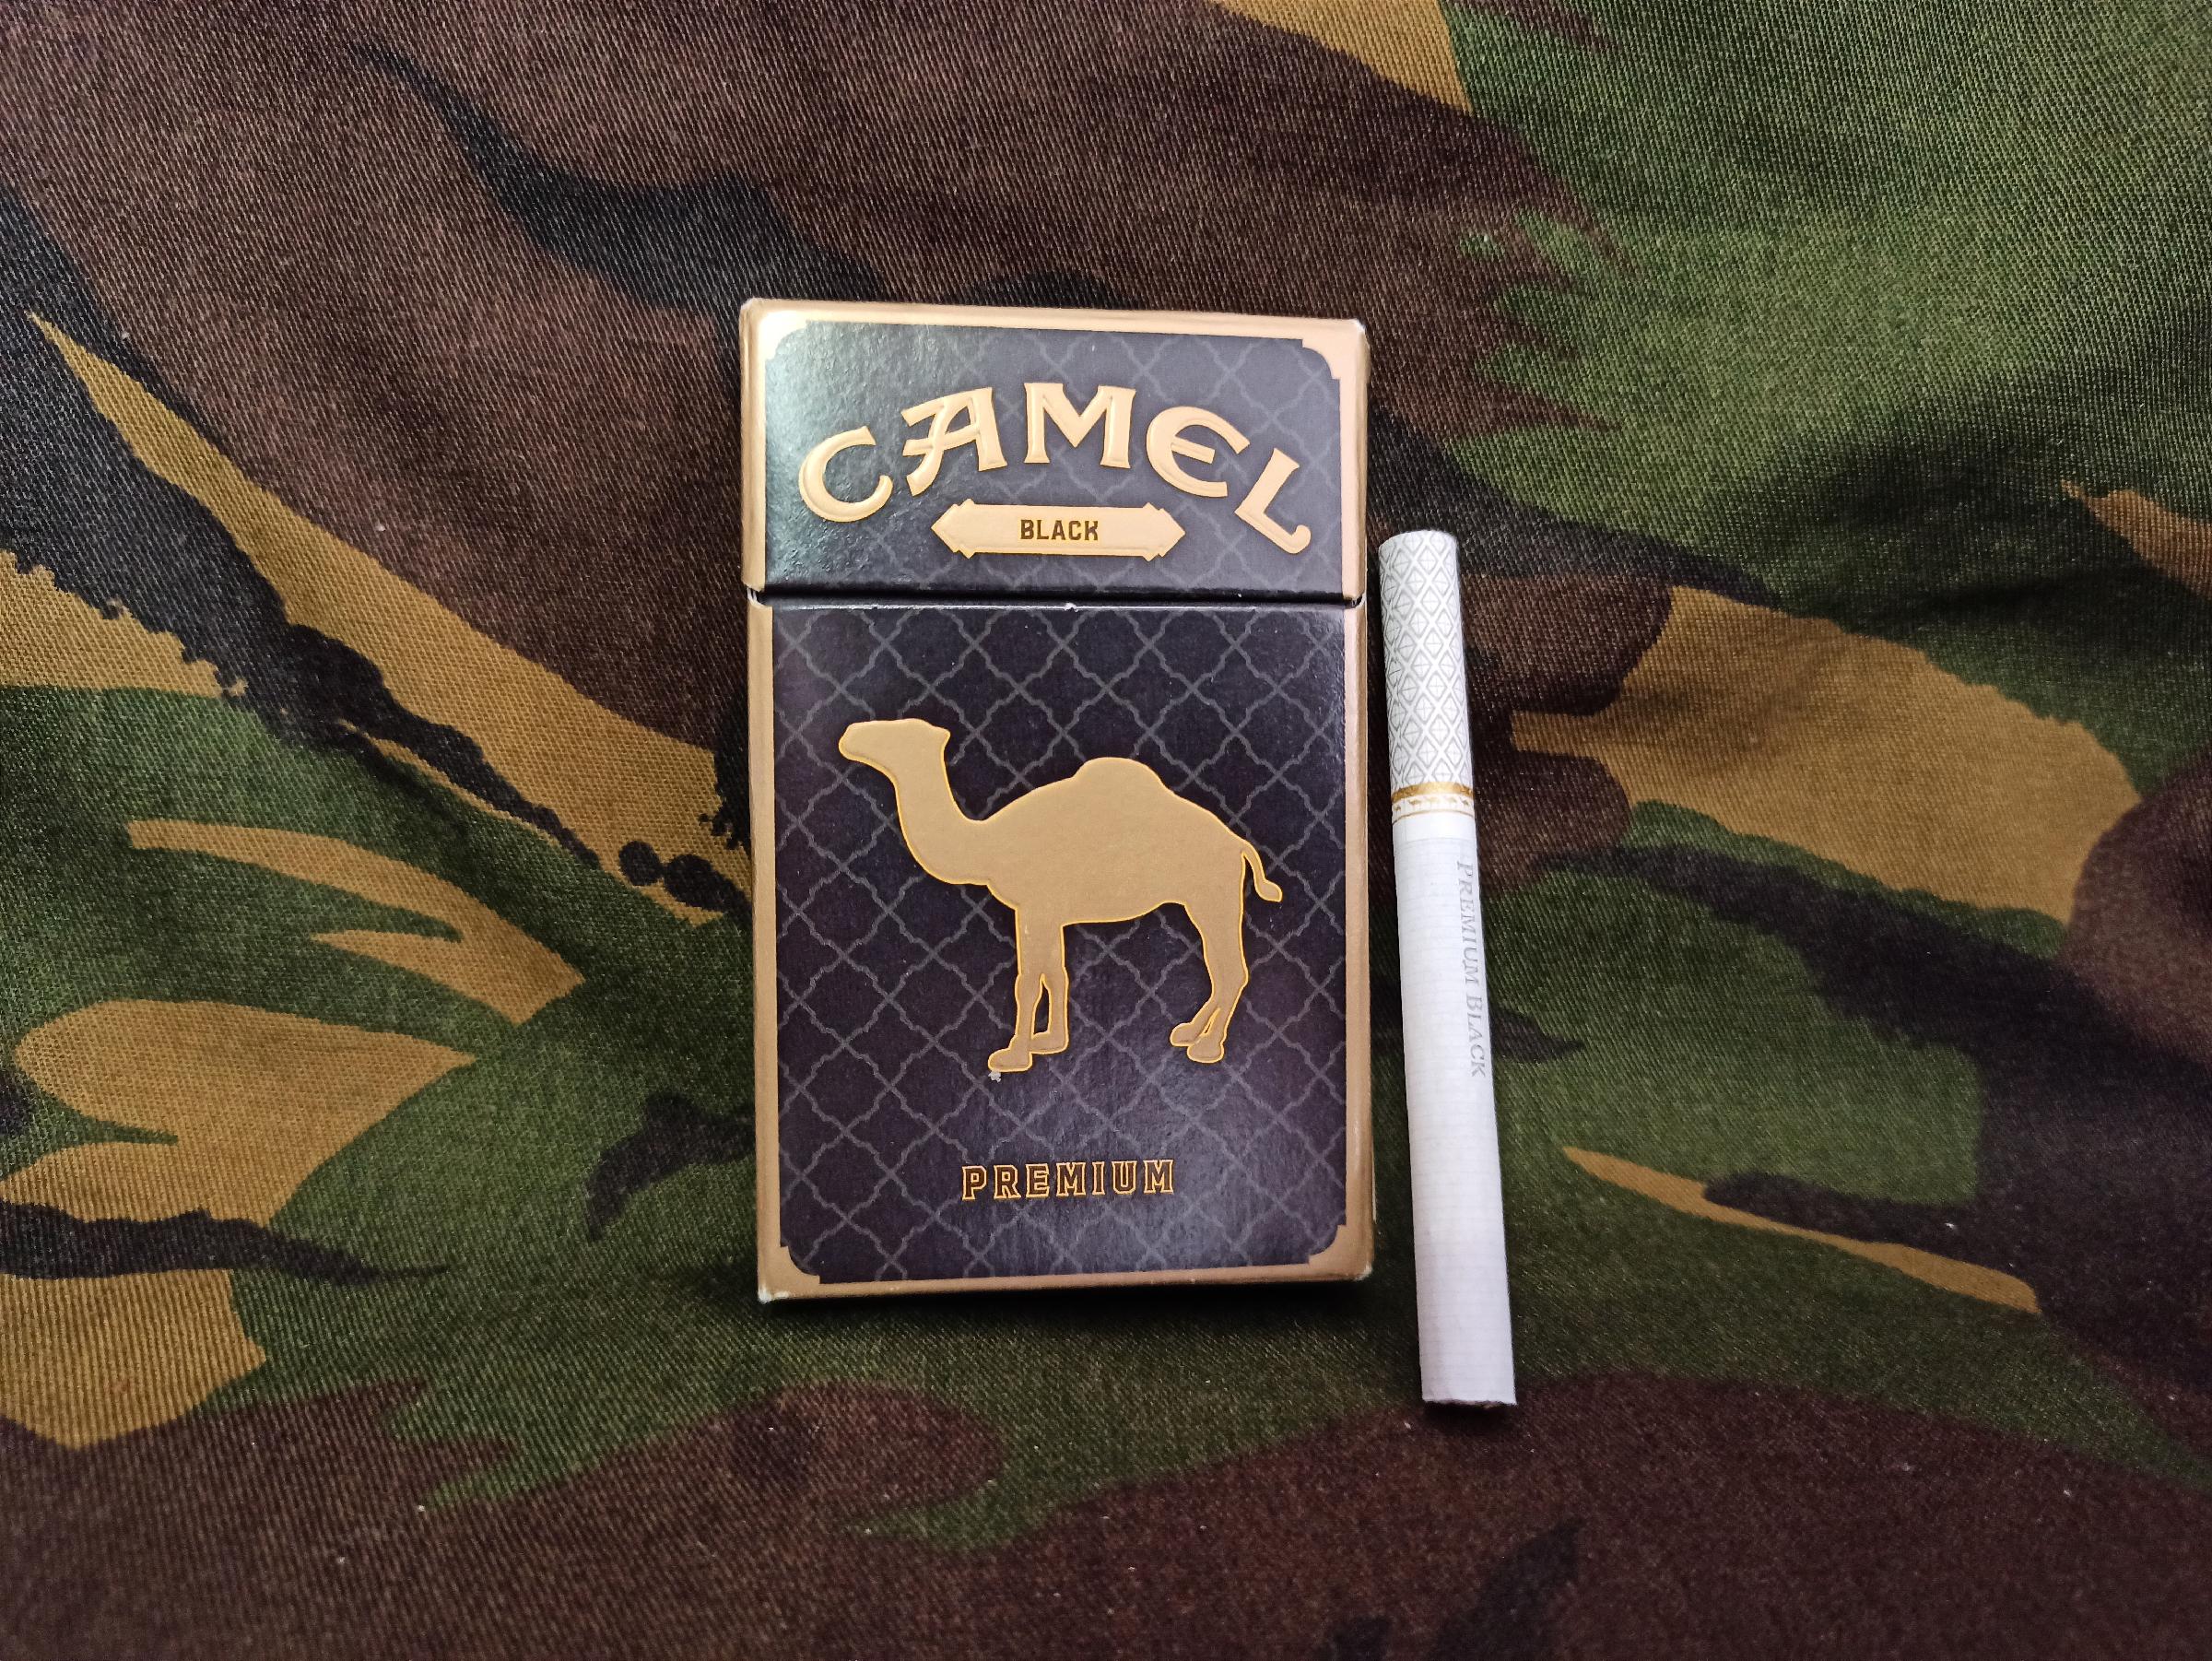 Camel Premium Black сигареты. Сигареты кэмел черный премиум. Кэмел сигареты Блэк Блэк премиум. Сигареты Camel Compact Black.